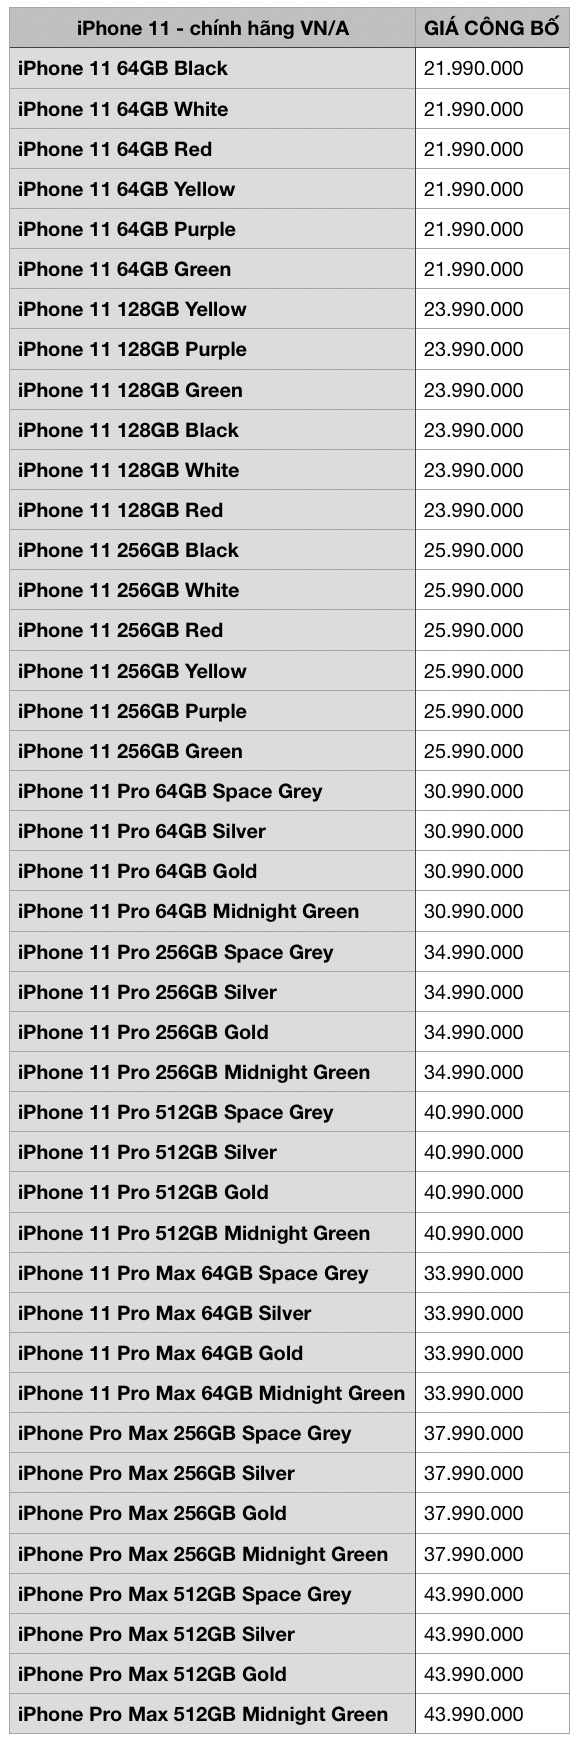 Di Động Việt công bố giá bán iPhone 11 chính hãng VN/A, mua sớm nhận ưu đãi giảm thêm đến 3 triệu